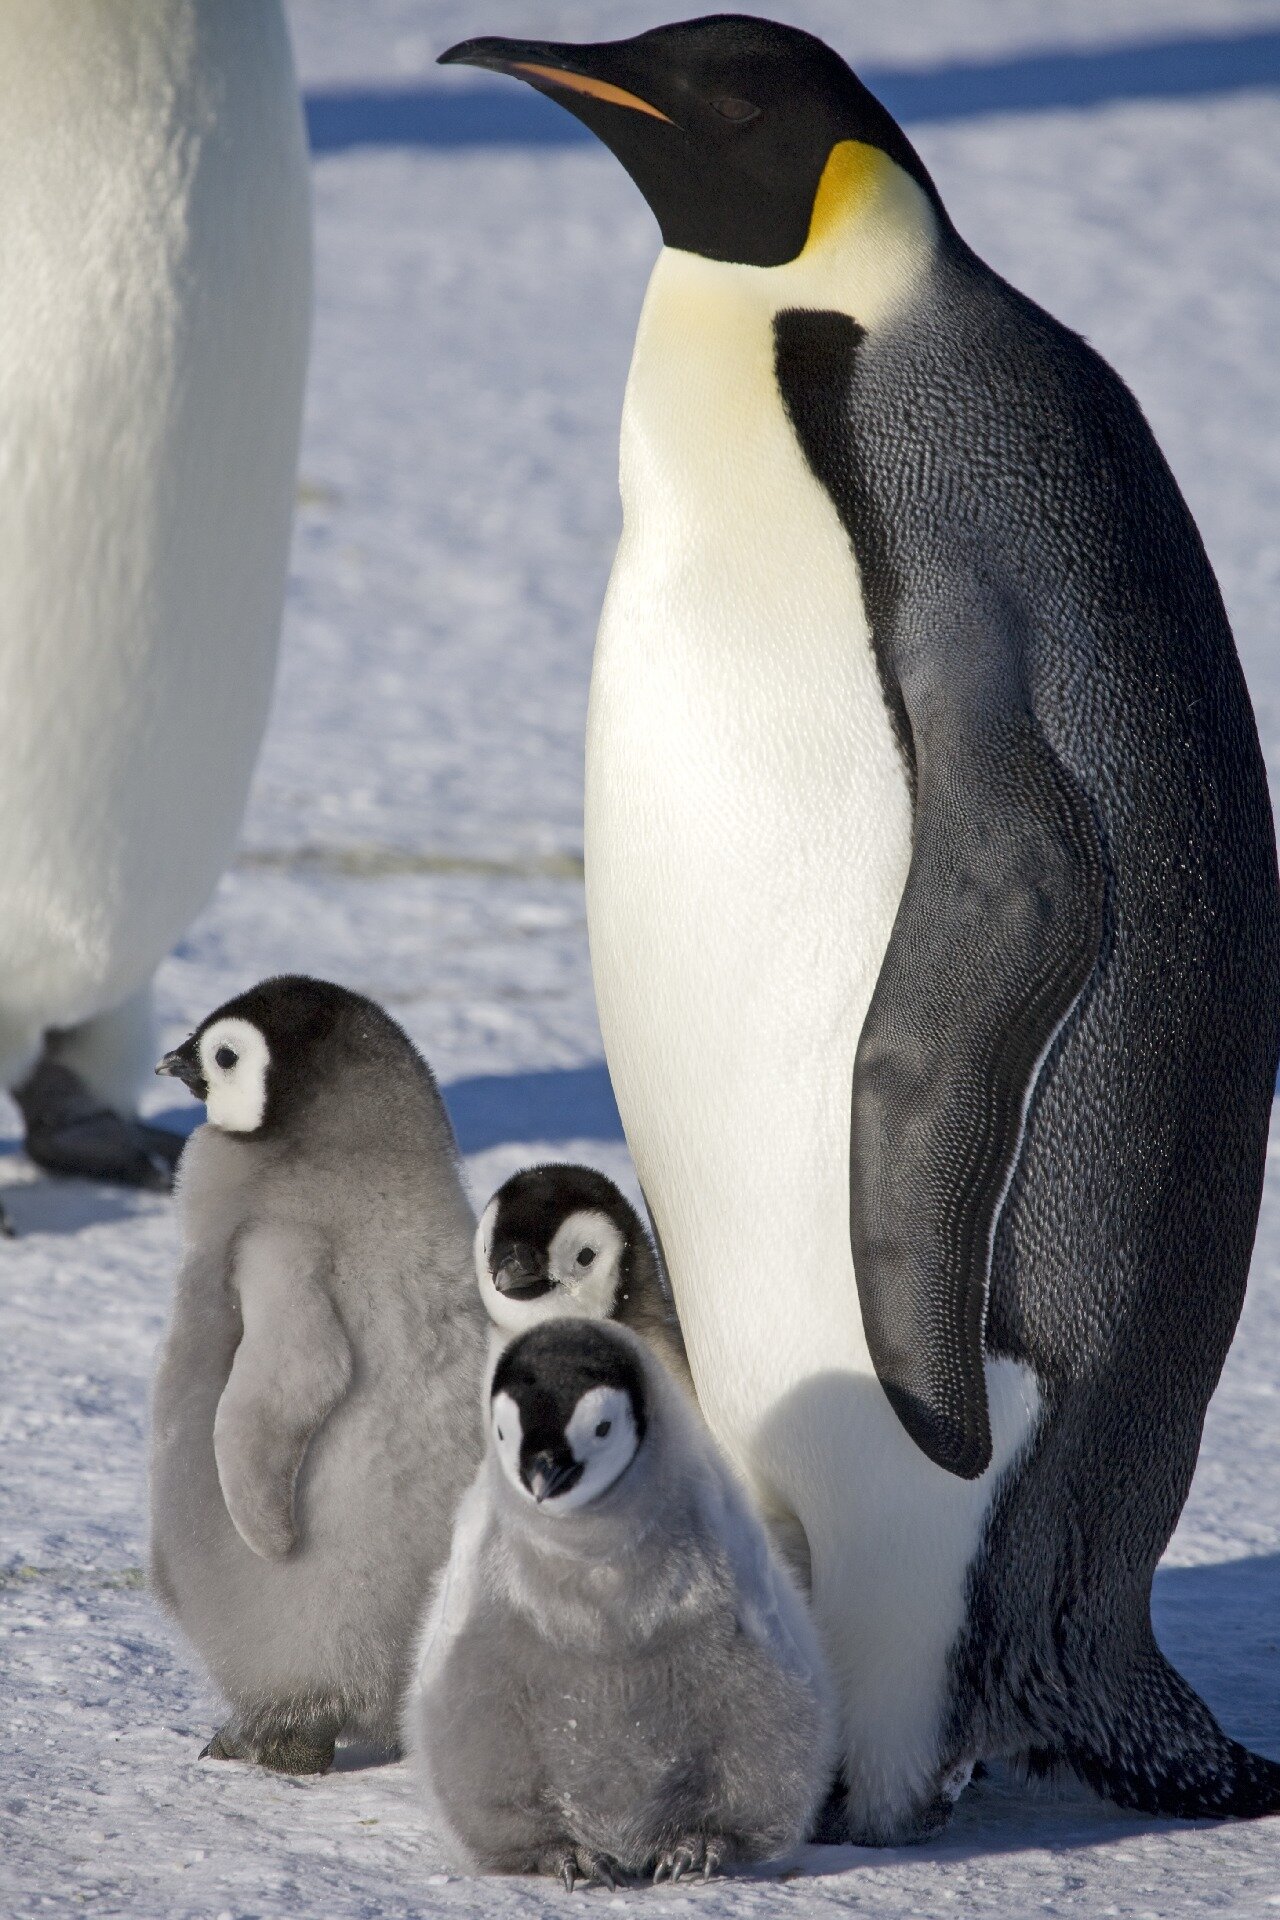 Two Penguins Share A Hug